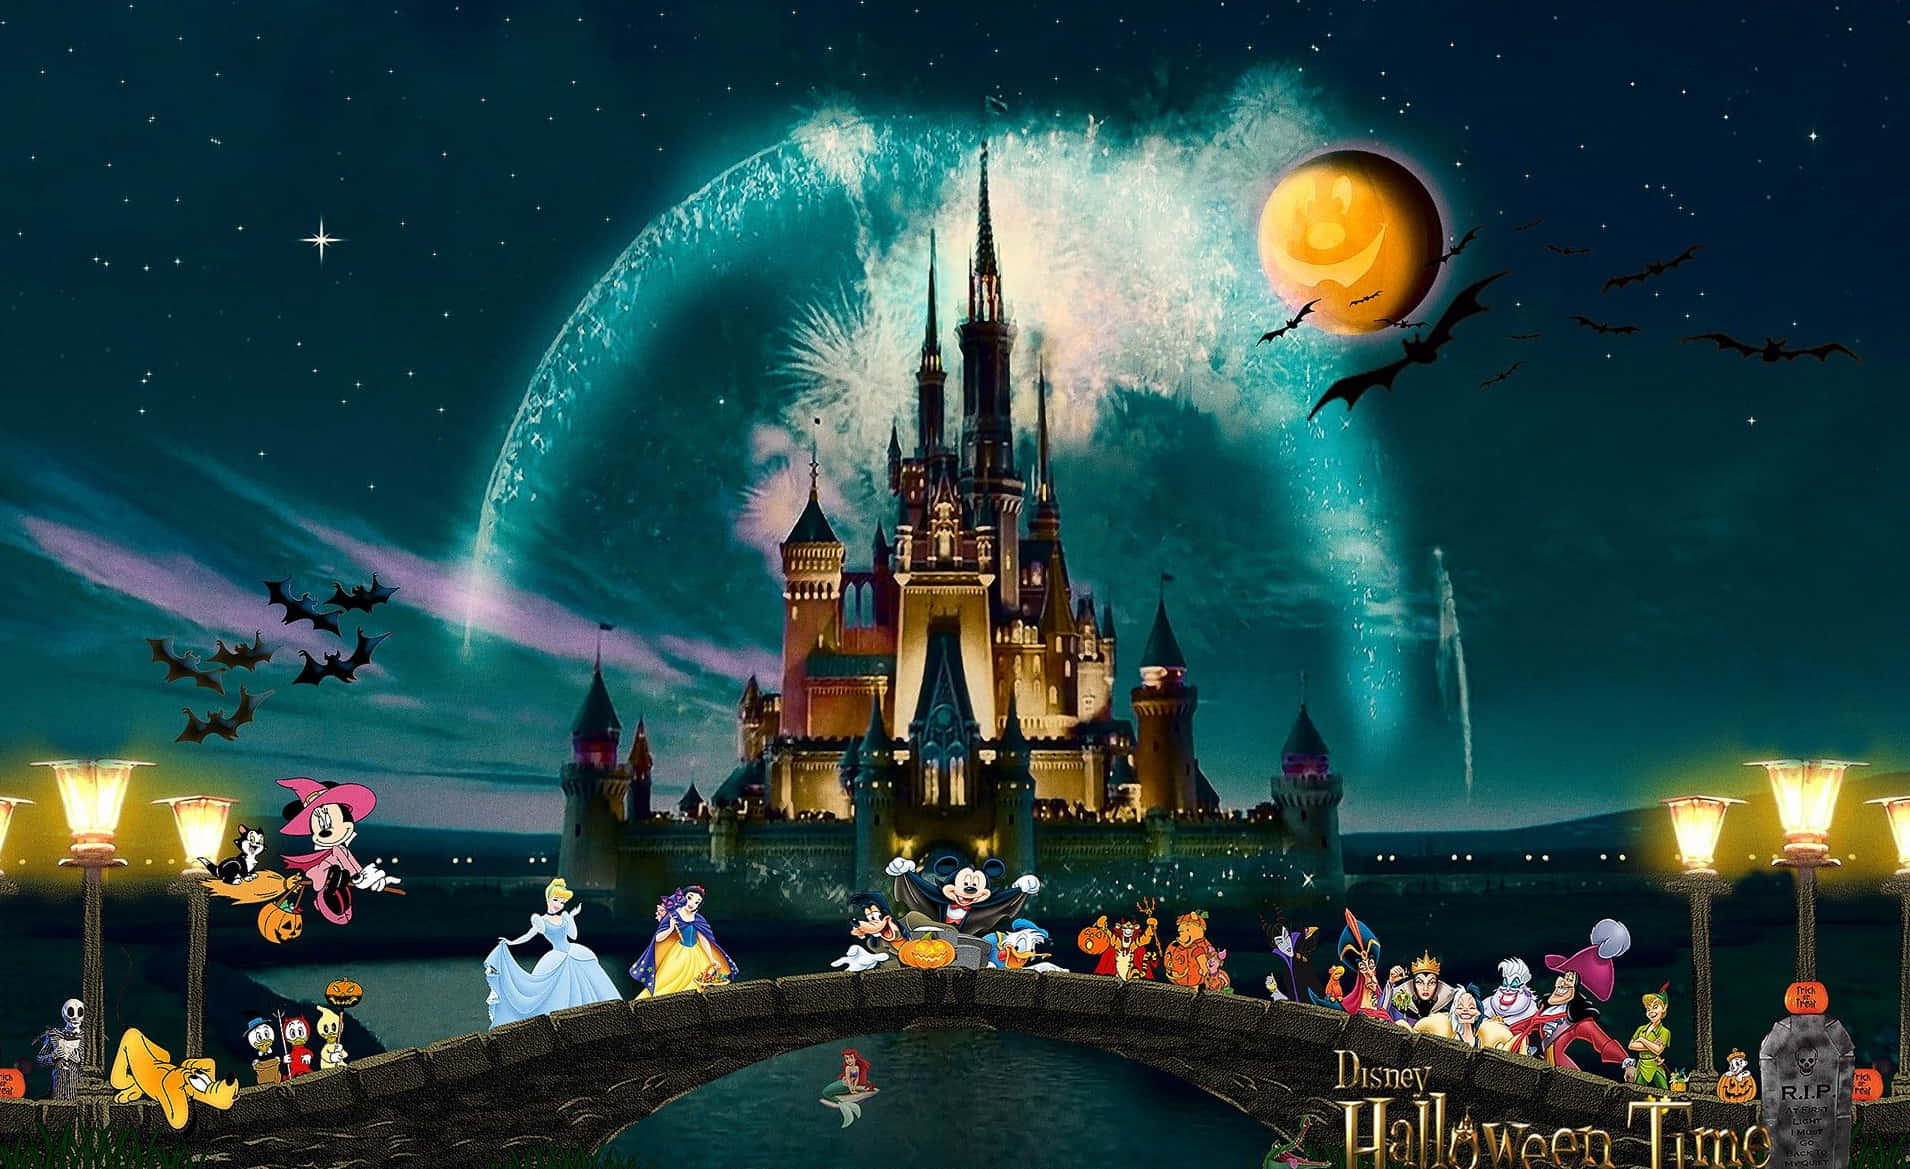 Fondode Pantalla De Halloween De Disney Con Mickey, Minnie Y Villanos